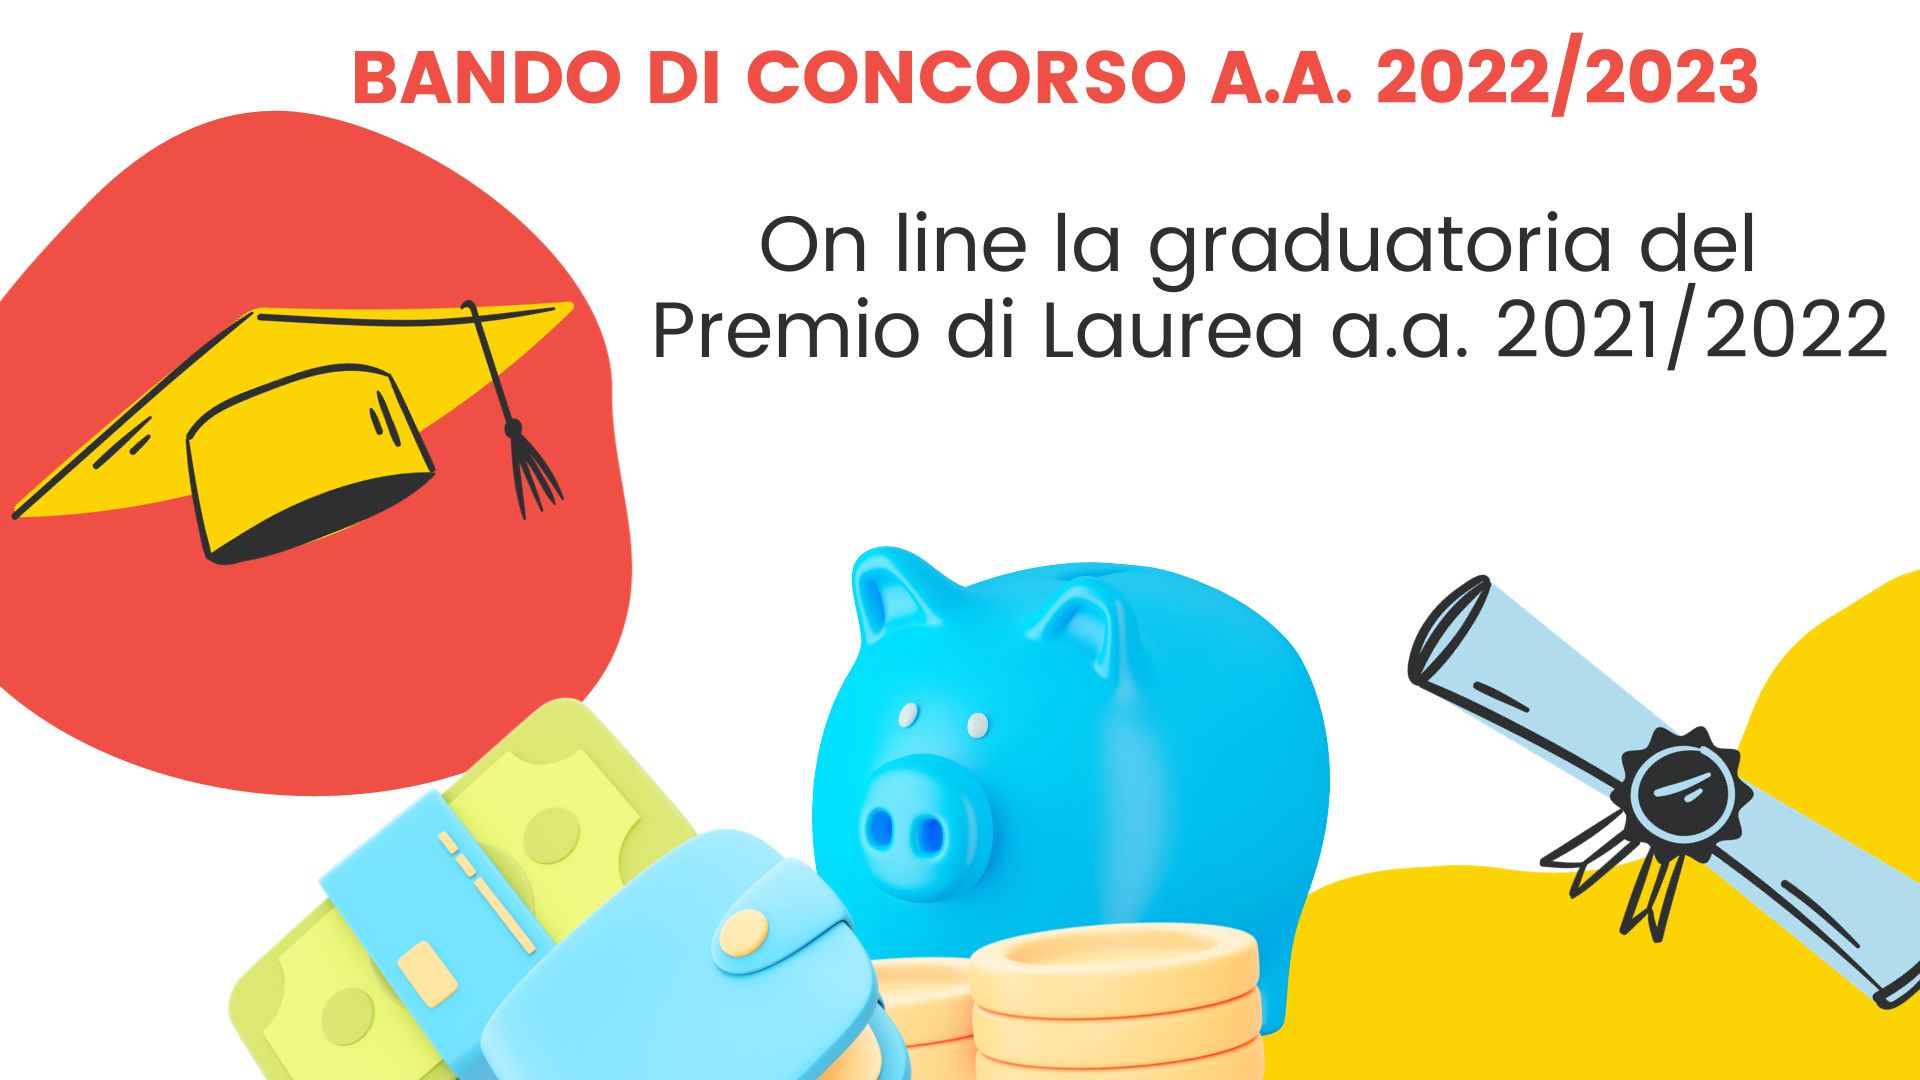 Bando di concorso a.a. 2022/2023-Premio di Laurea 2021/2022 – On line la graduatoria